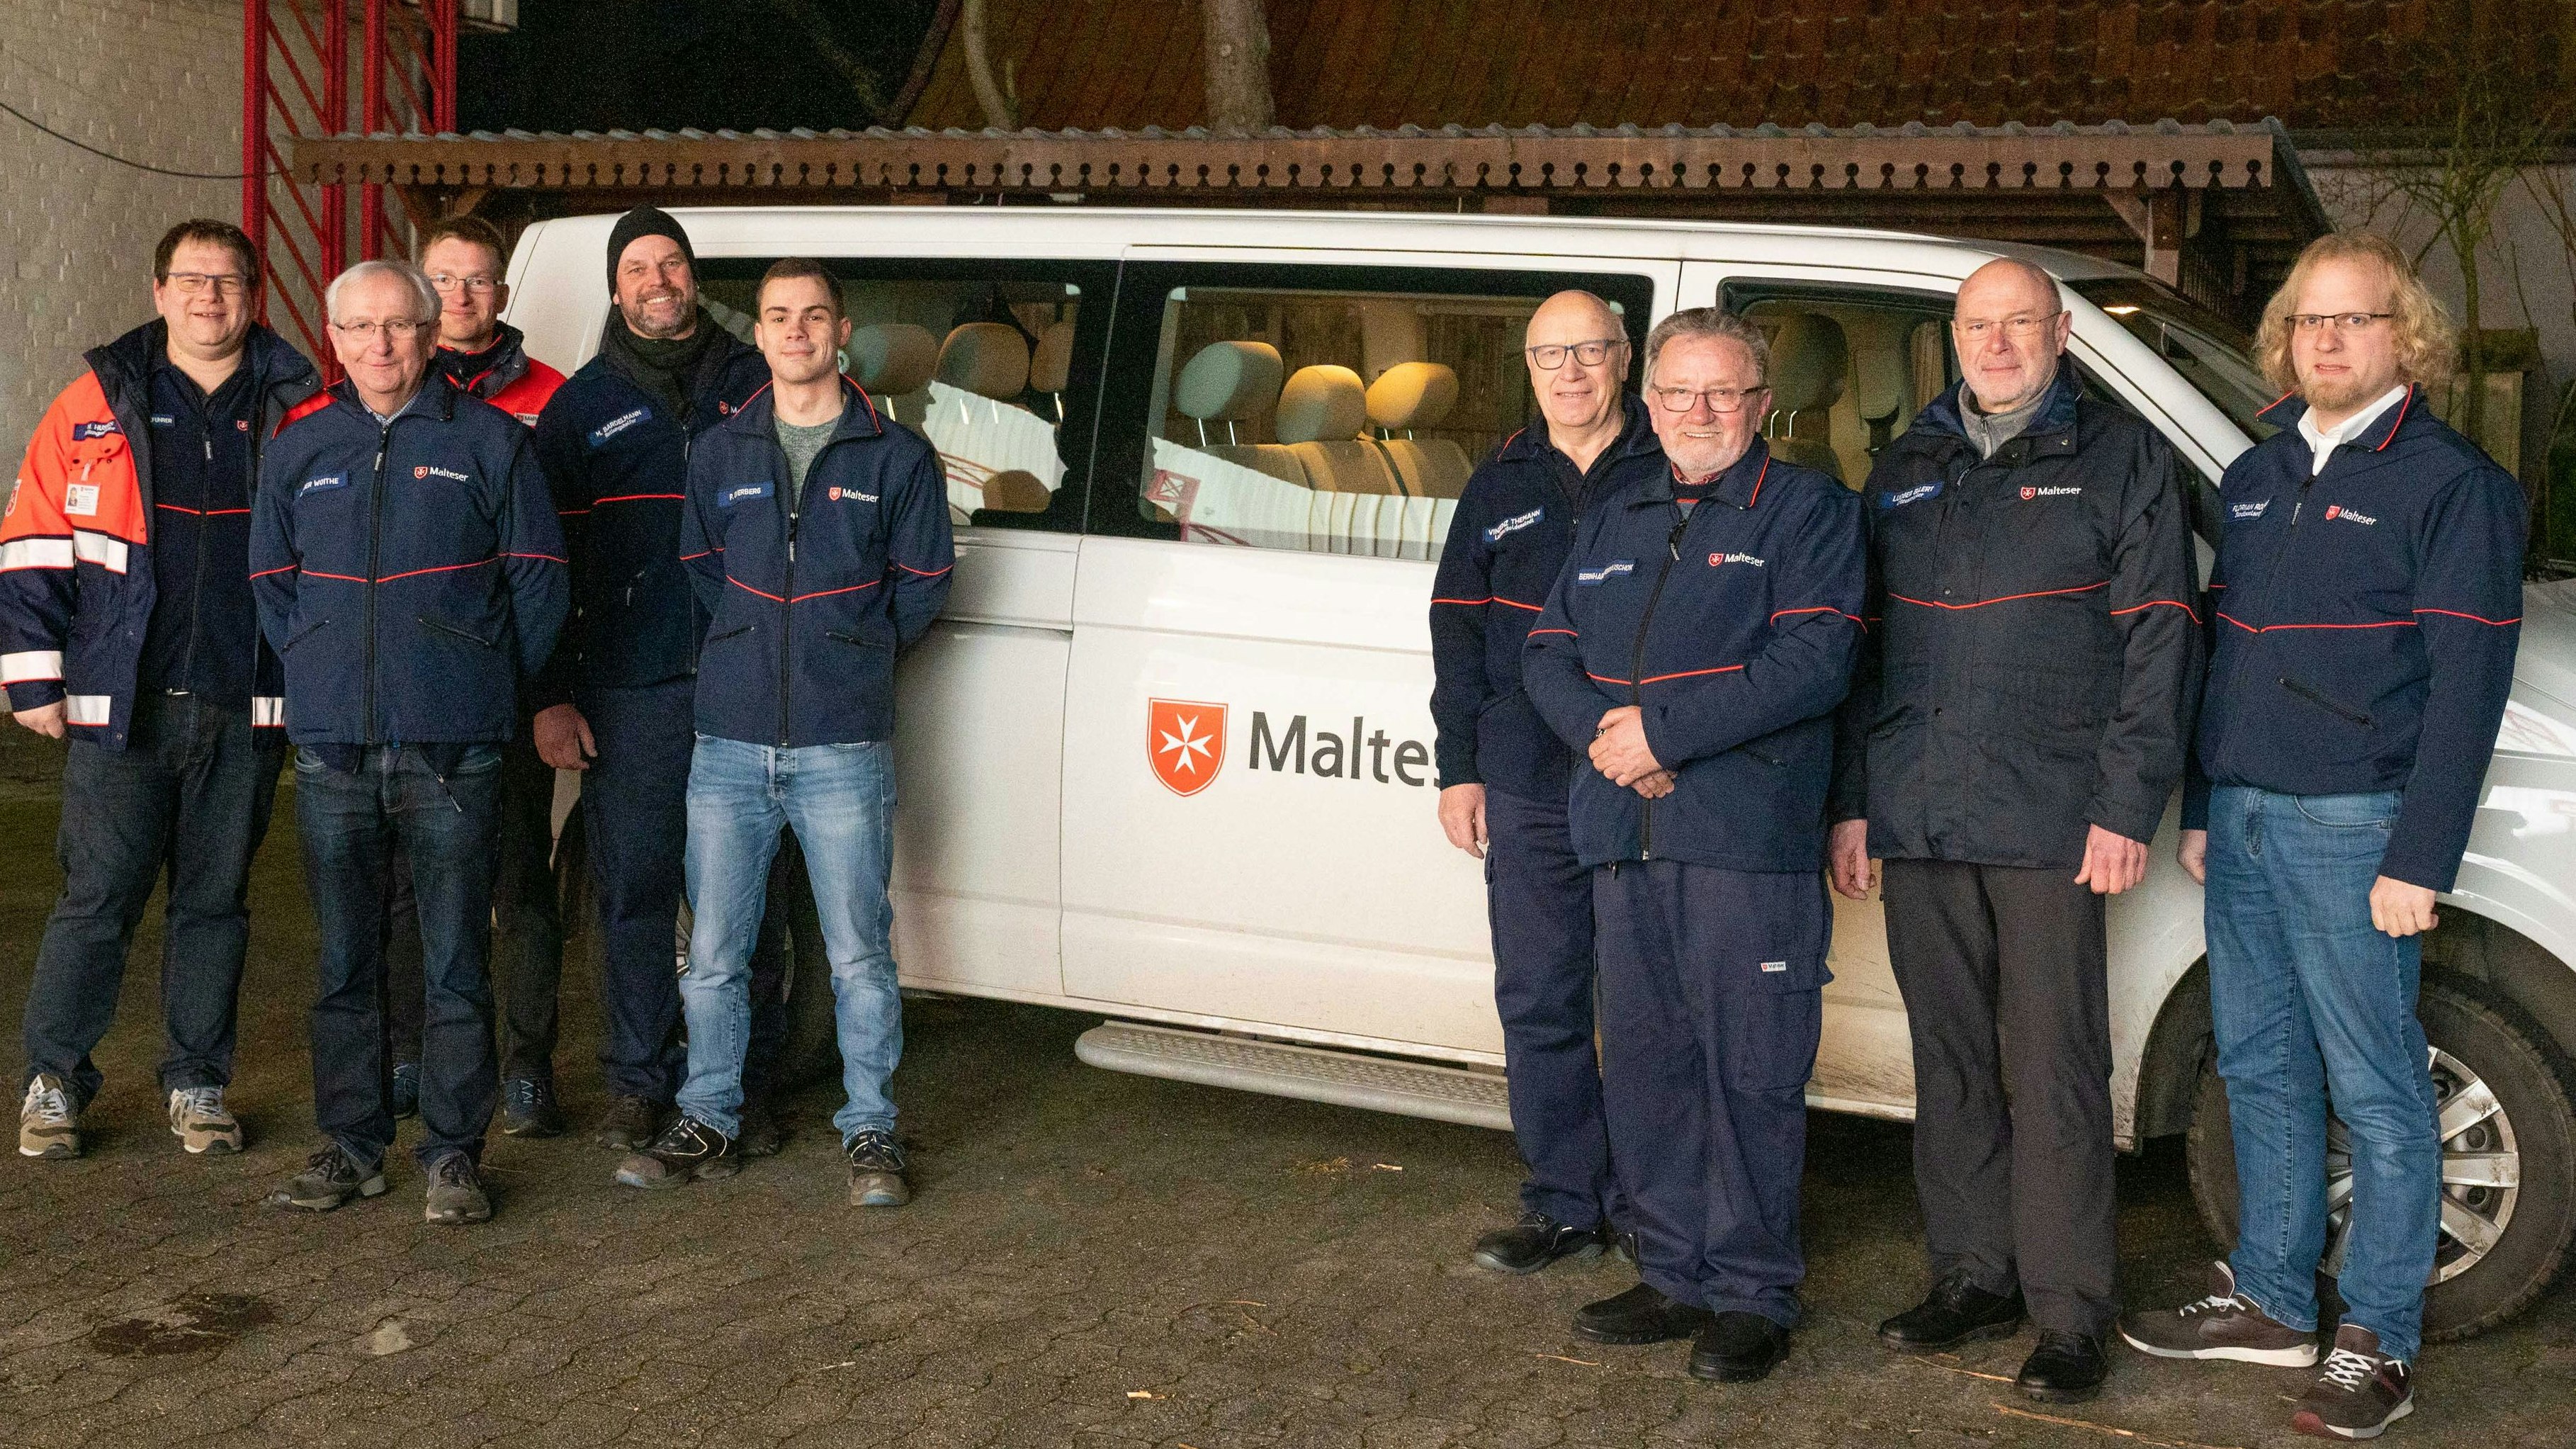 Montagmorgen in Vechta: Malteser fahren zusammen nach Berlin, um gesponserte Mietfahrzeuge für den Transport ukrainischer Geflüchteter zu den Maltesern nach Polen zu bringen. Foto: M. Niehues